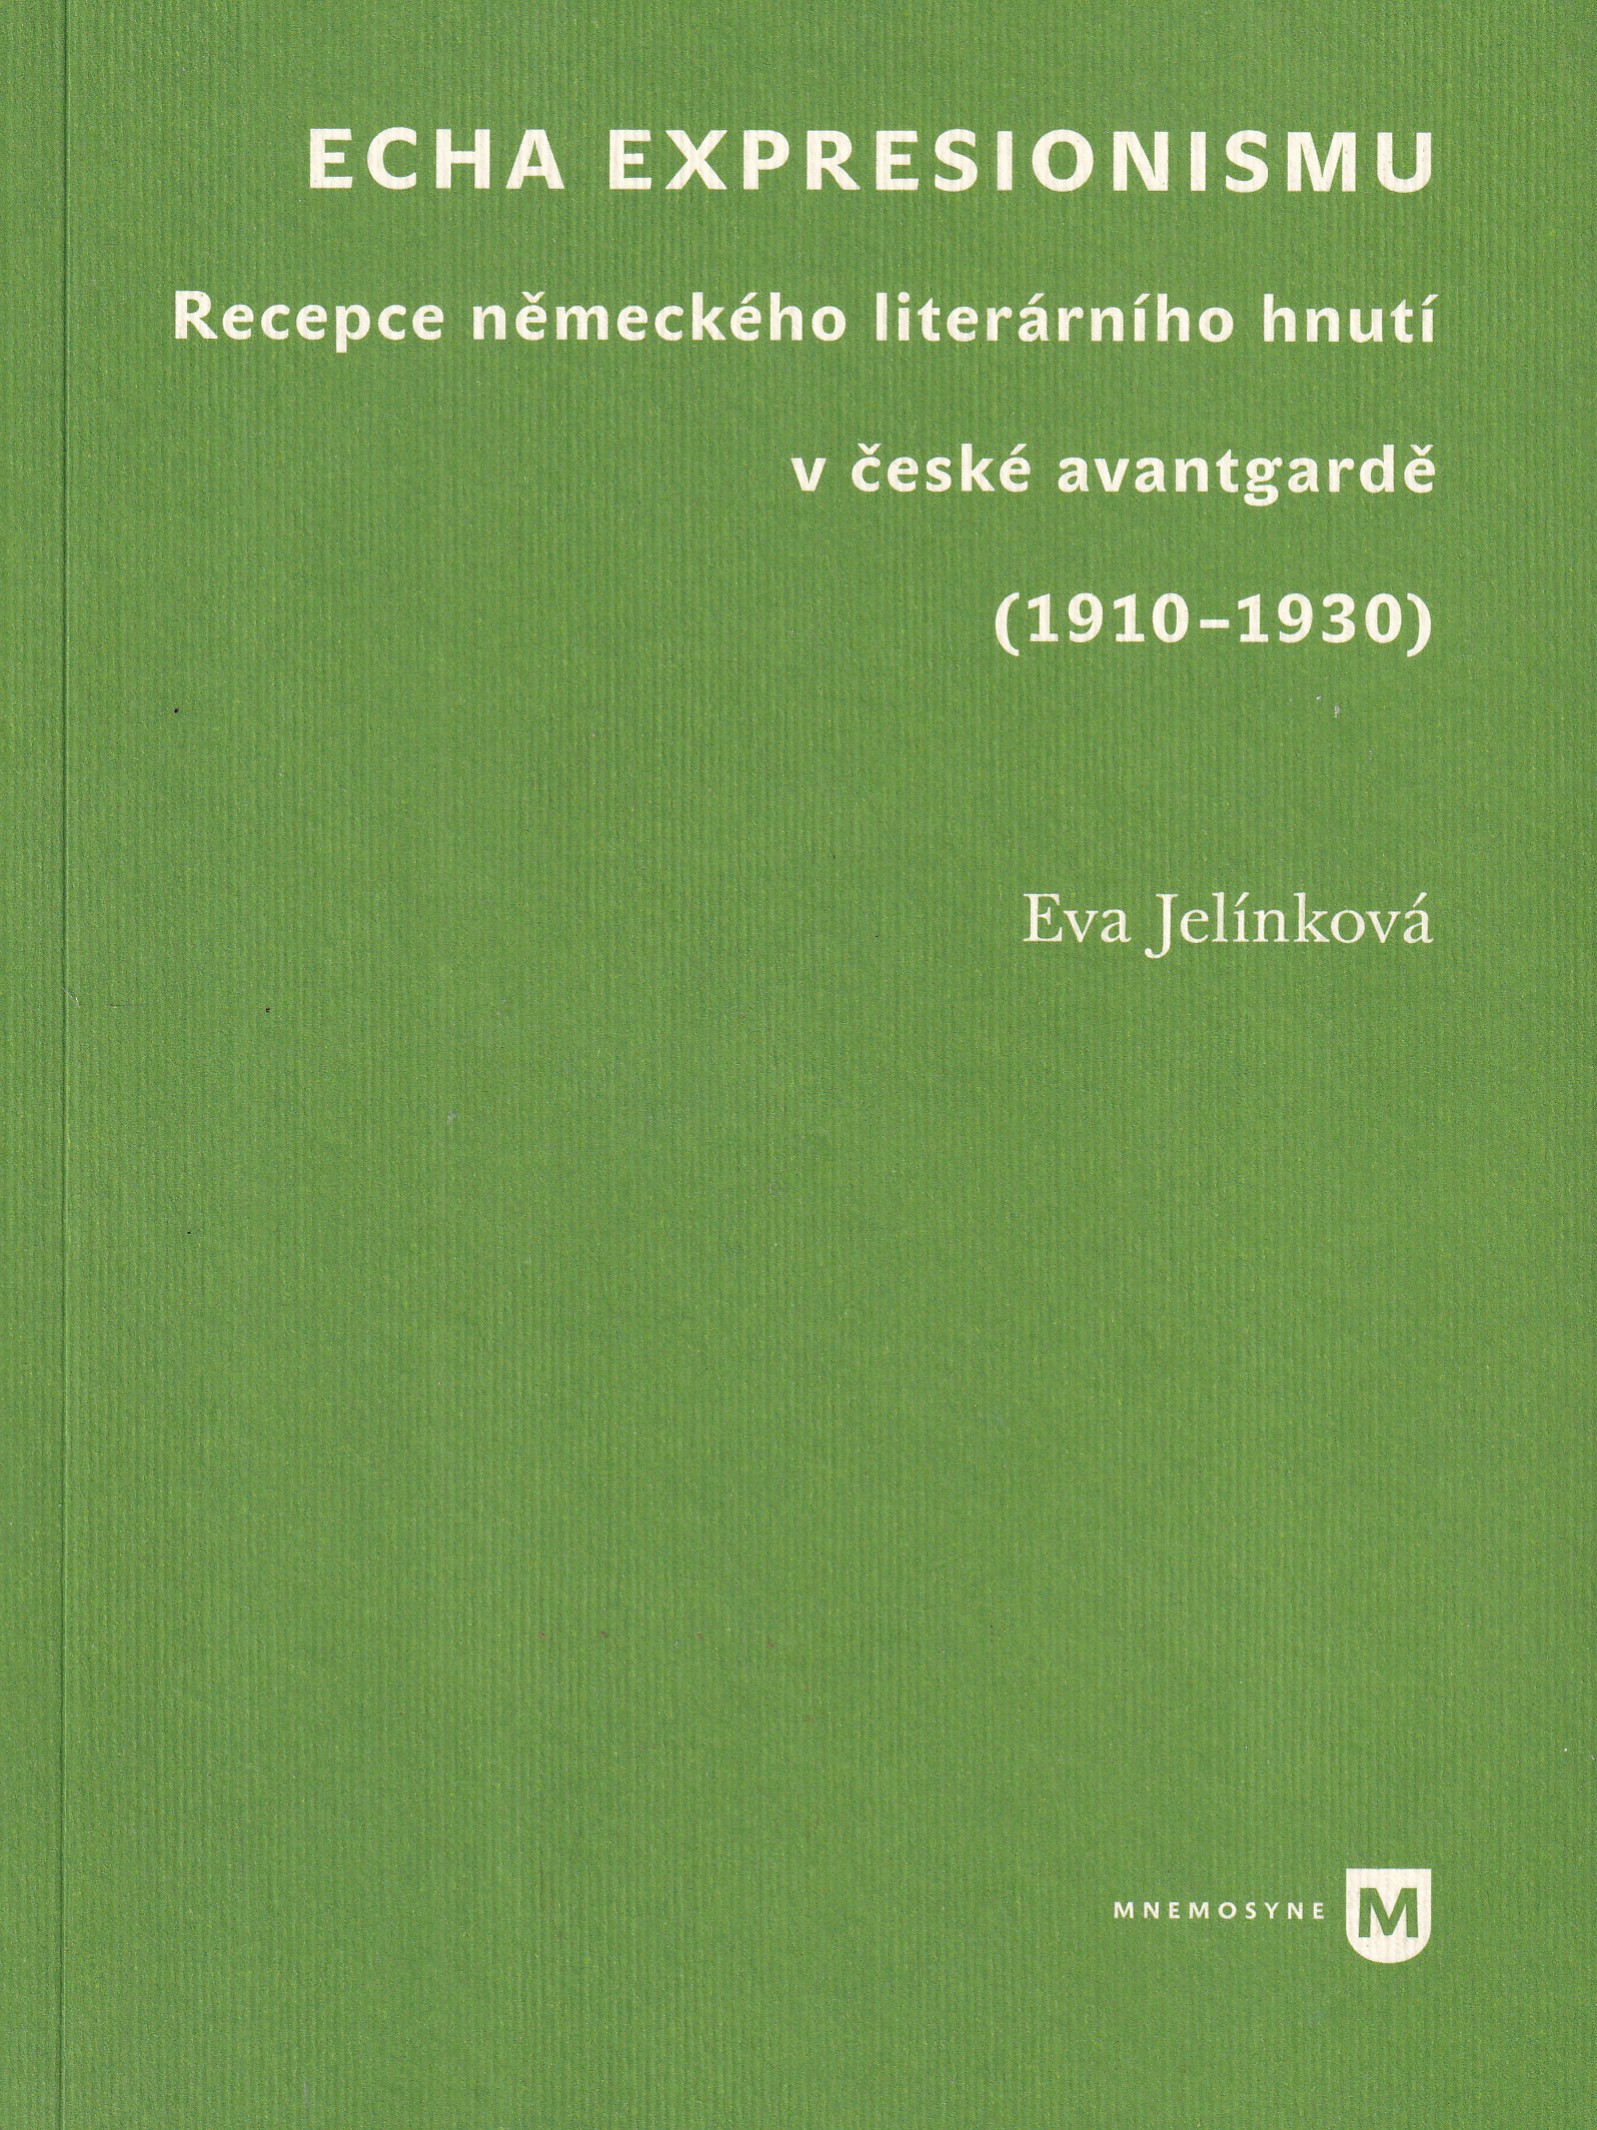 Echa expresionismu : recepce německého literárního hnutí v české avantgardě (1910-1930)